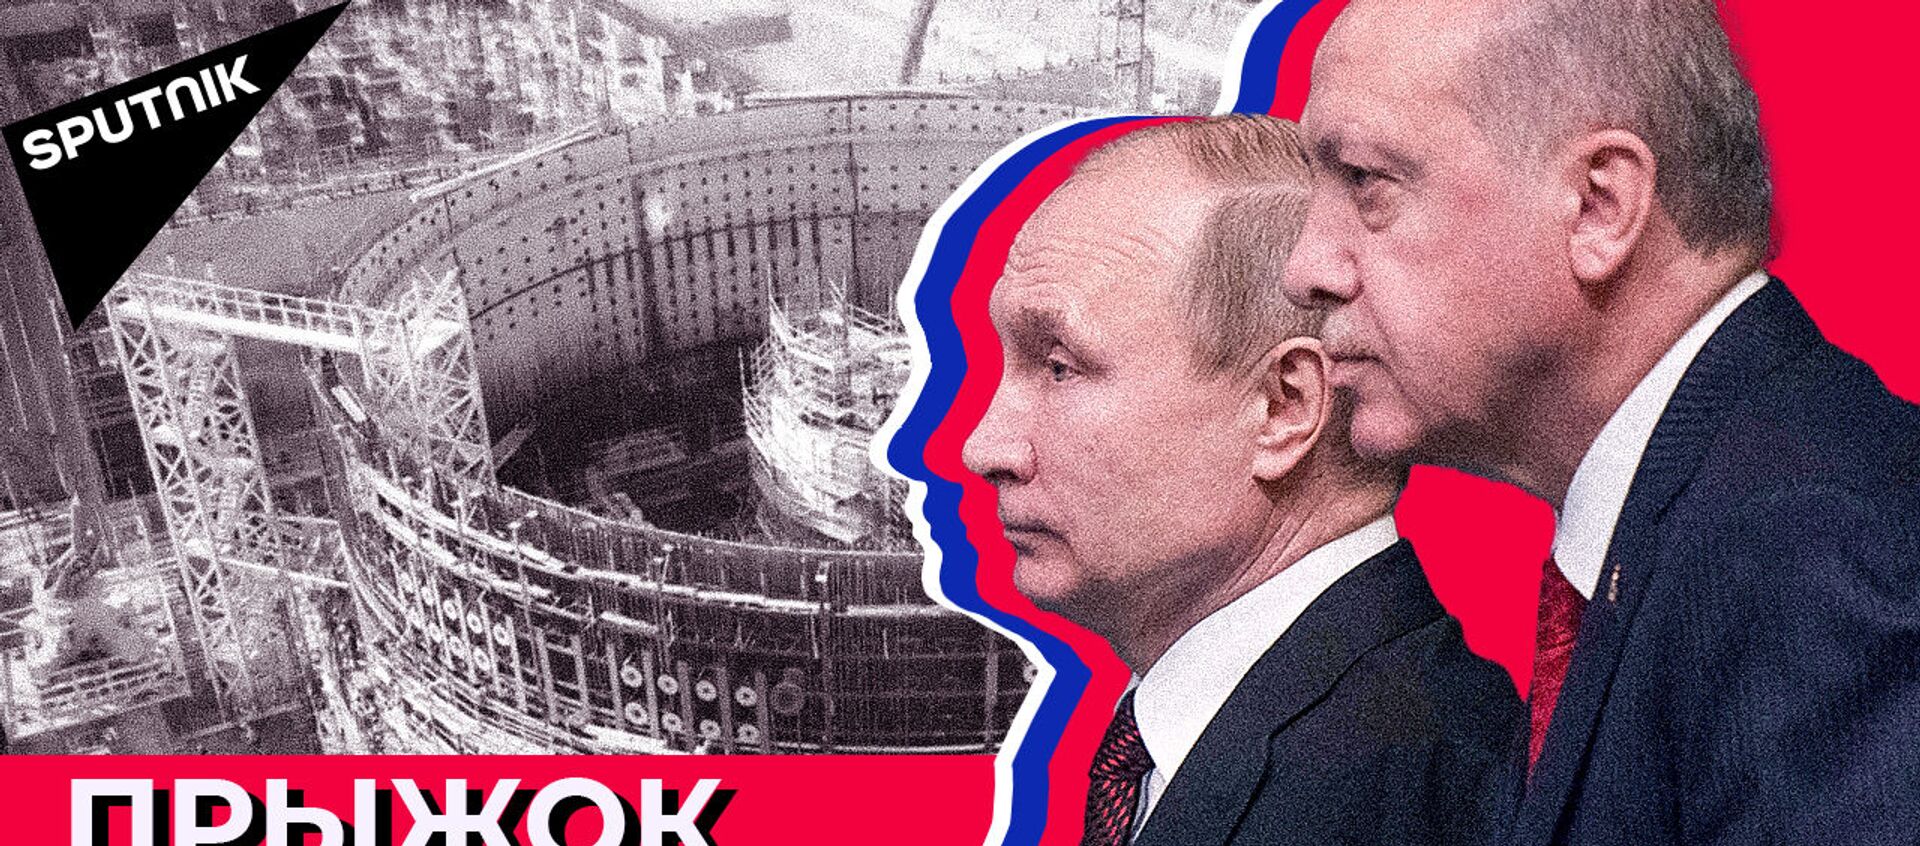 АЭС “Аккую”: как Россия строит первую турецкую атомную электростанцию - Sputnik Азербайджан, 1920, 11.03.2021